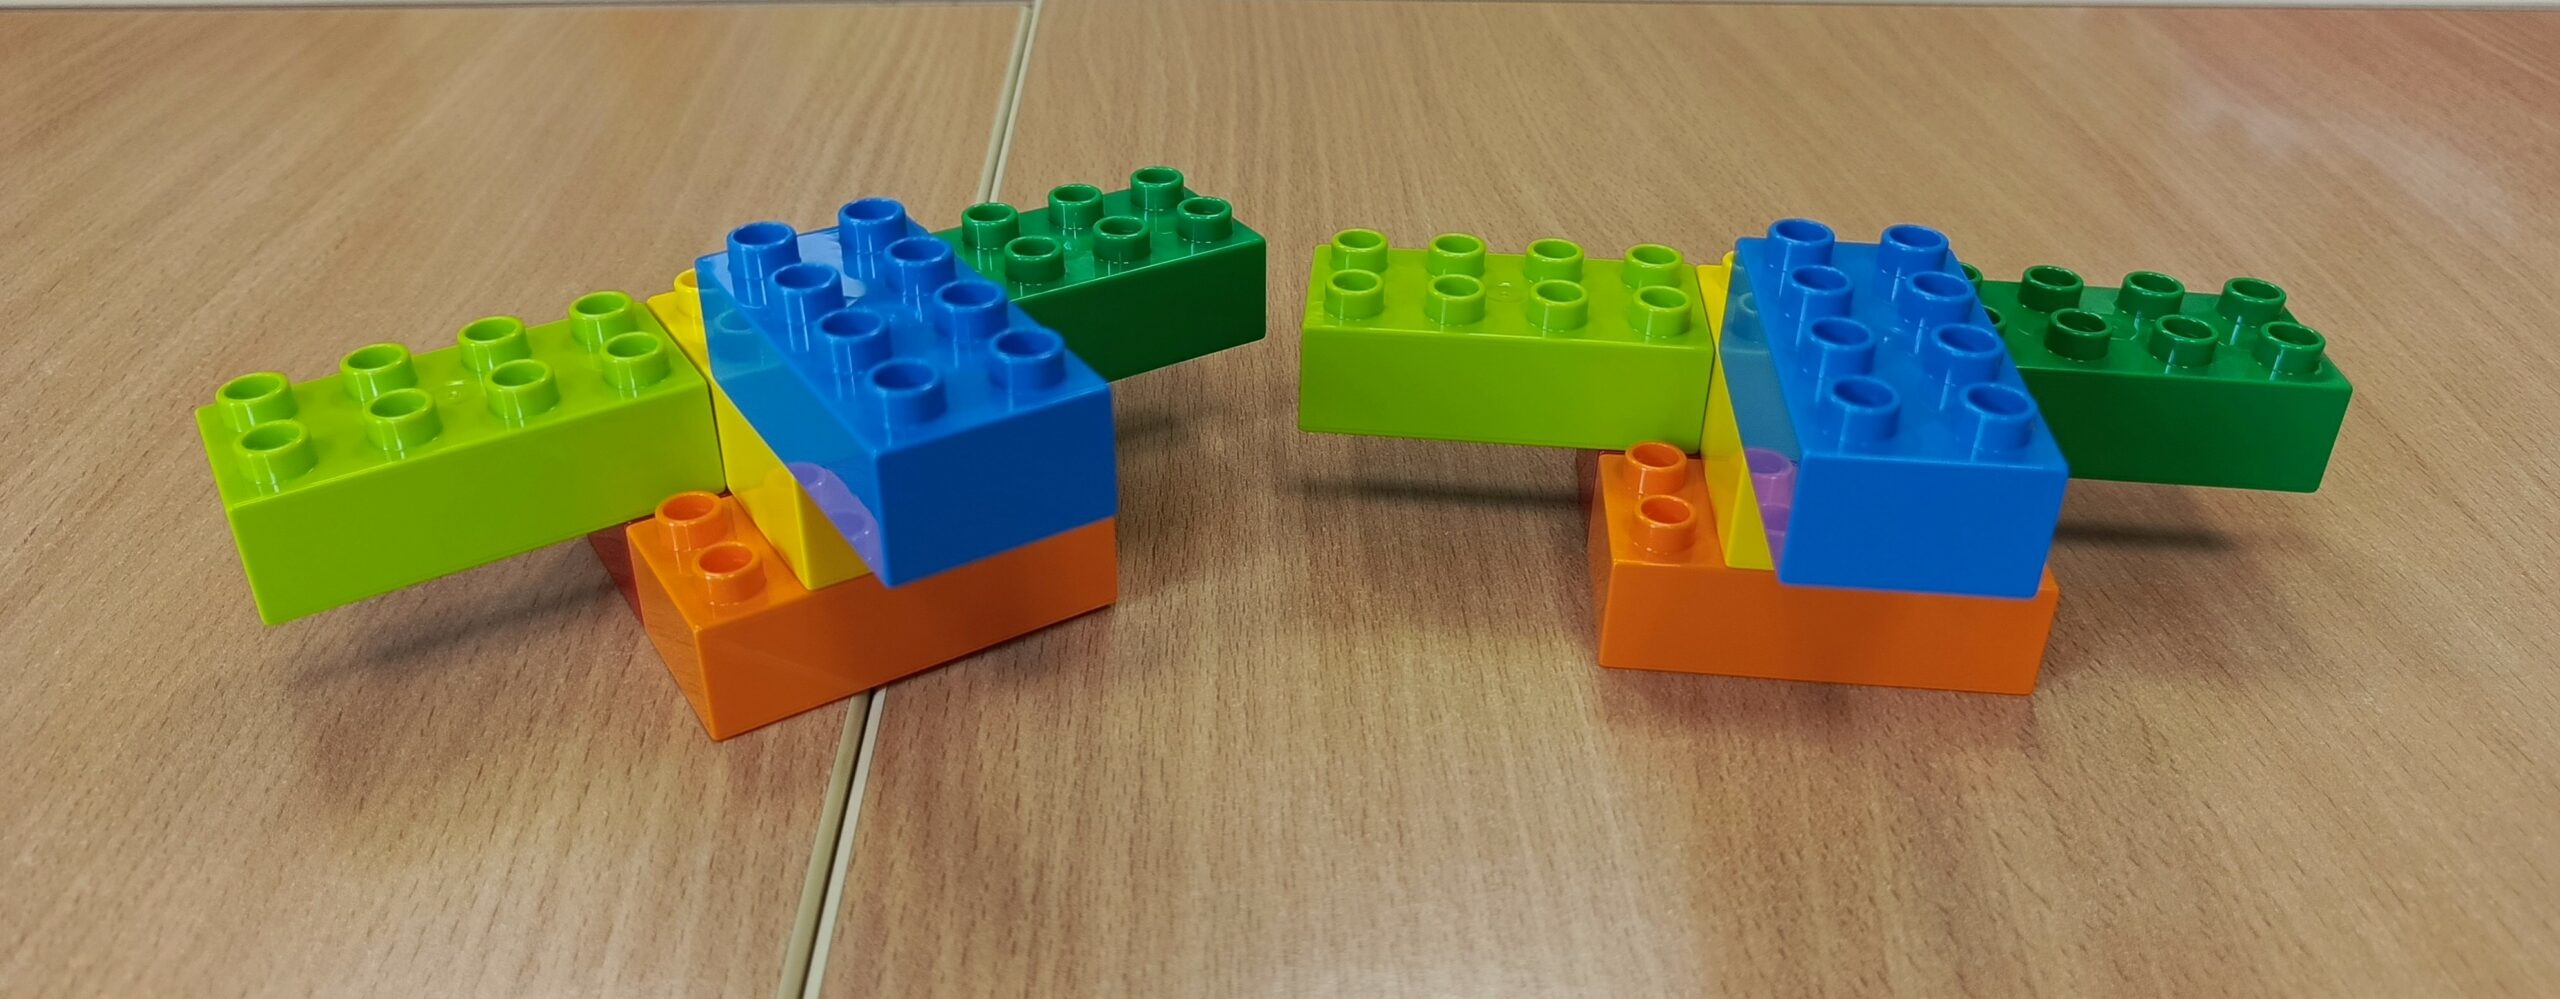 Na zdjęciu widoczne dwa zestawy pięciu klocków w kolorach: niebieski, jasny zielony, ciemny zielony, pomarańczowy, żółty. Złączone klocki kształtem przypominają samolot.